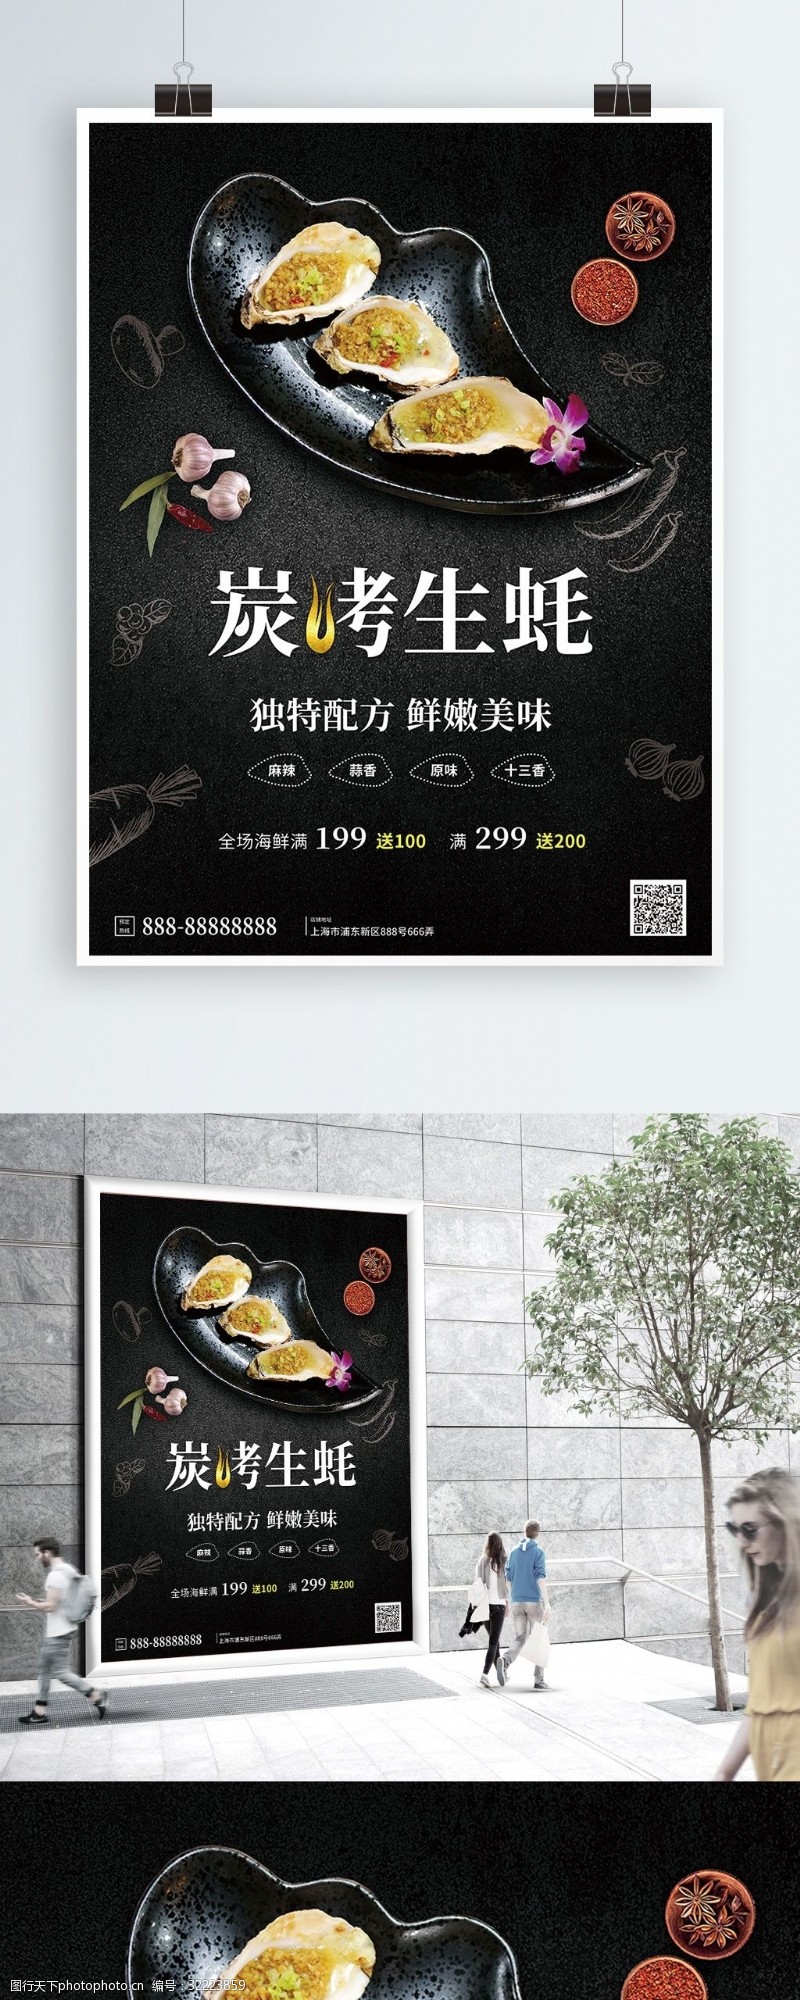 美食烧烤海报黑色炭烤生蚝海鲜美食优惠食宣传海报